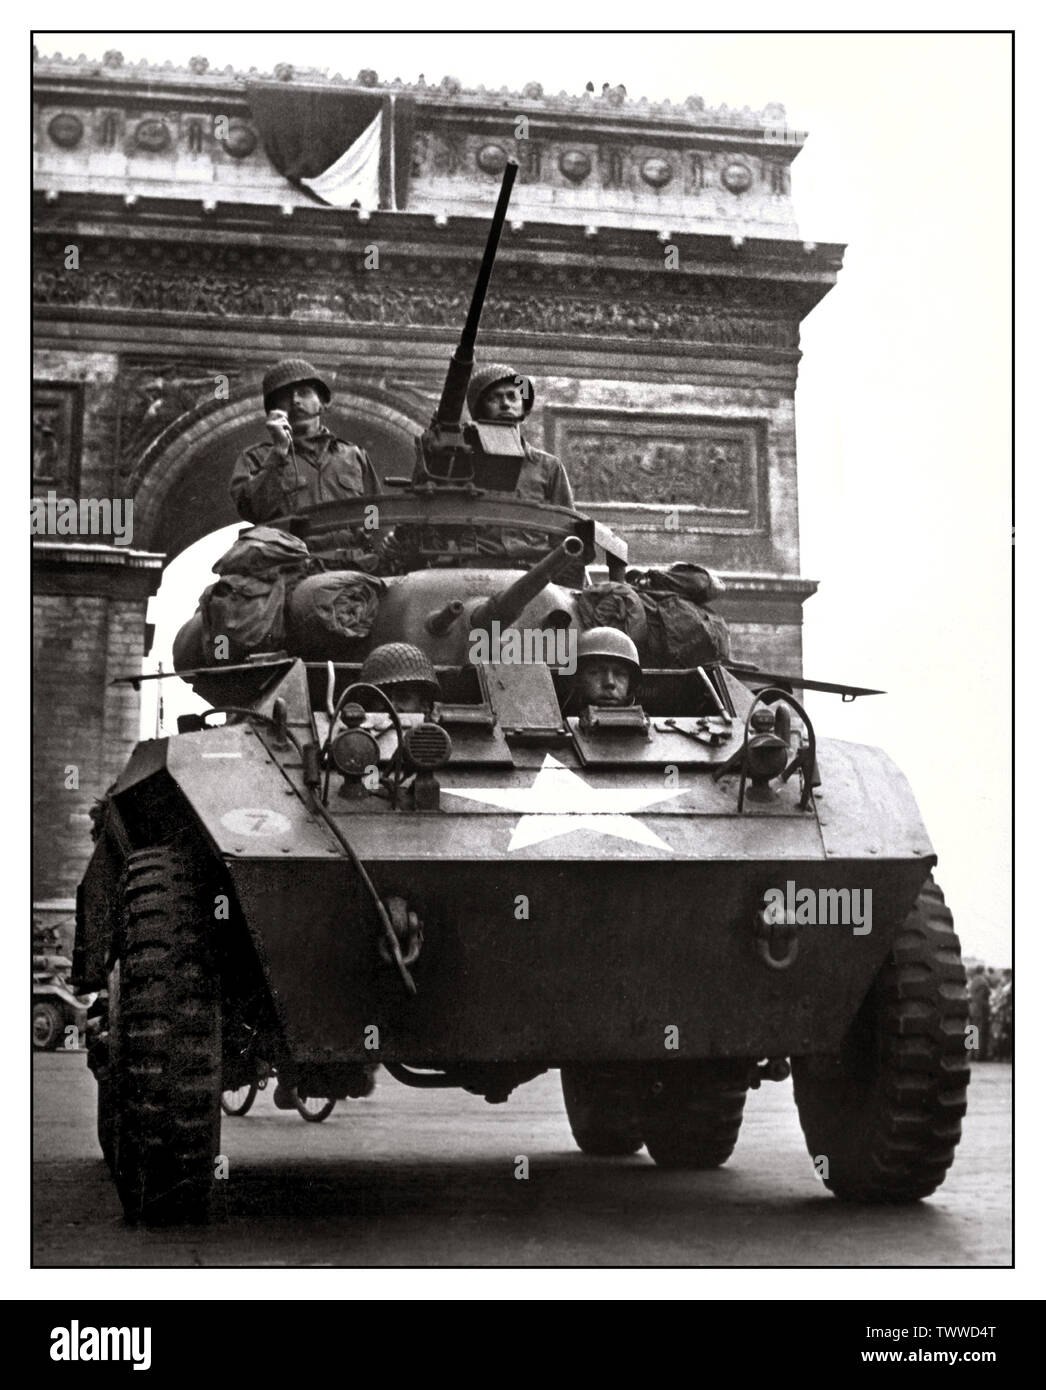 PARIS BEFREIUNG Vintage WW2-Bild der amerikanischen Soldaten in gepanzerten Fahrzeug während der Befreiung von Paris Frankreich die Trikolore vom Triumphbogen amerikanische Panzer in Paris, August 1944 fliegen. Stockfoto